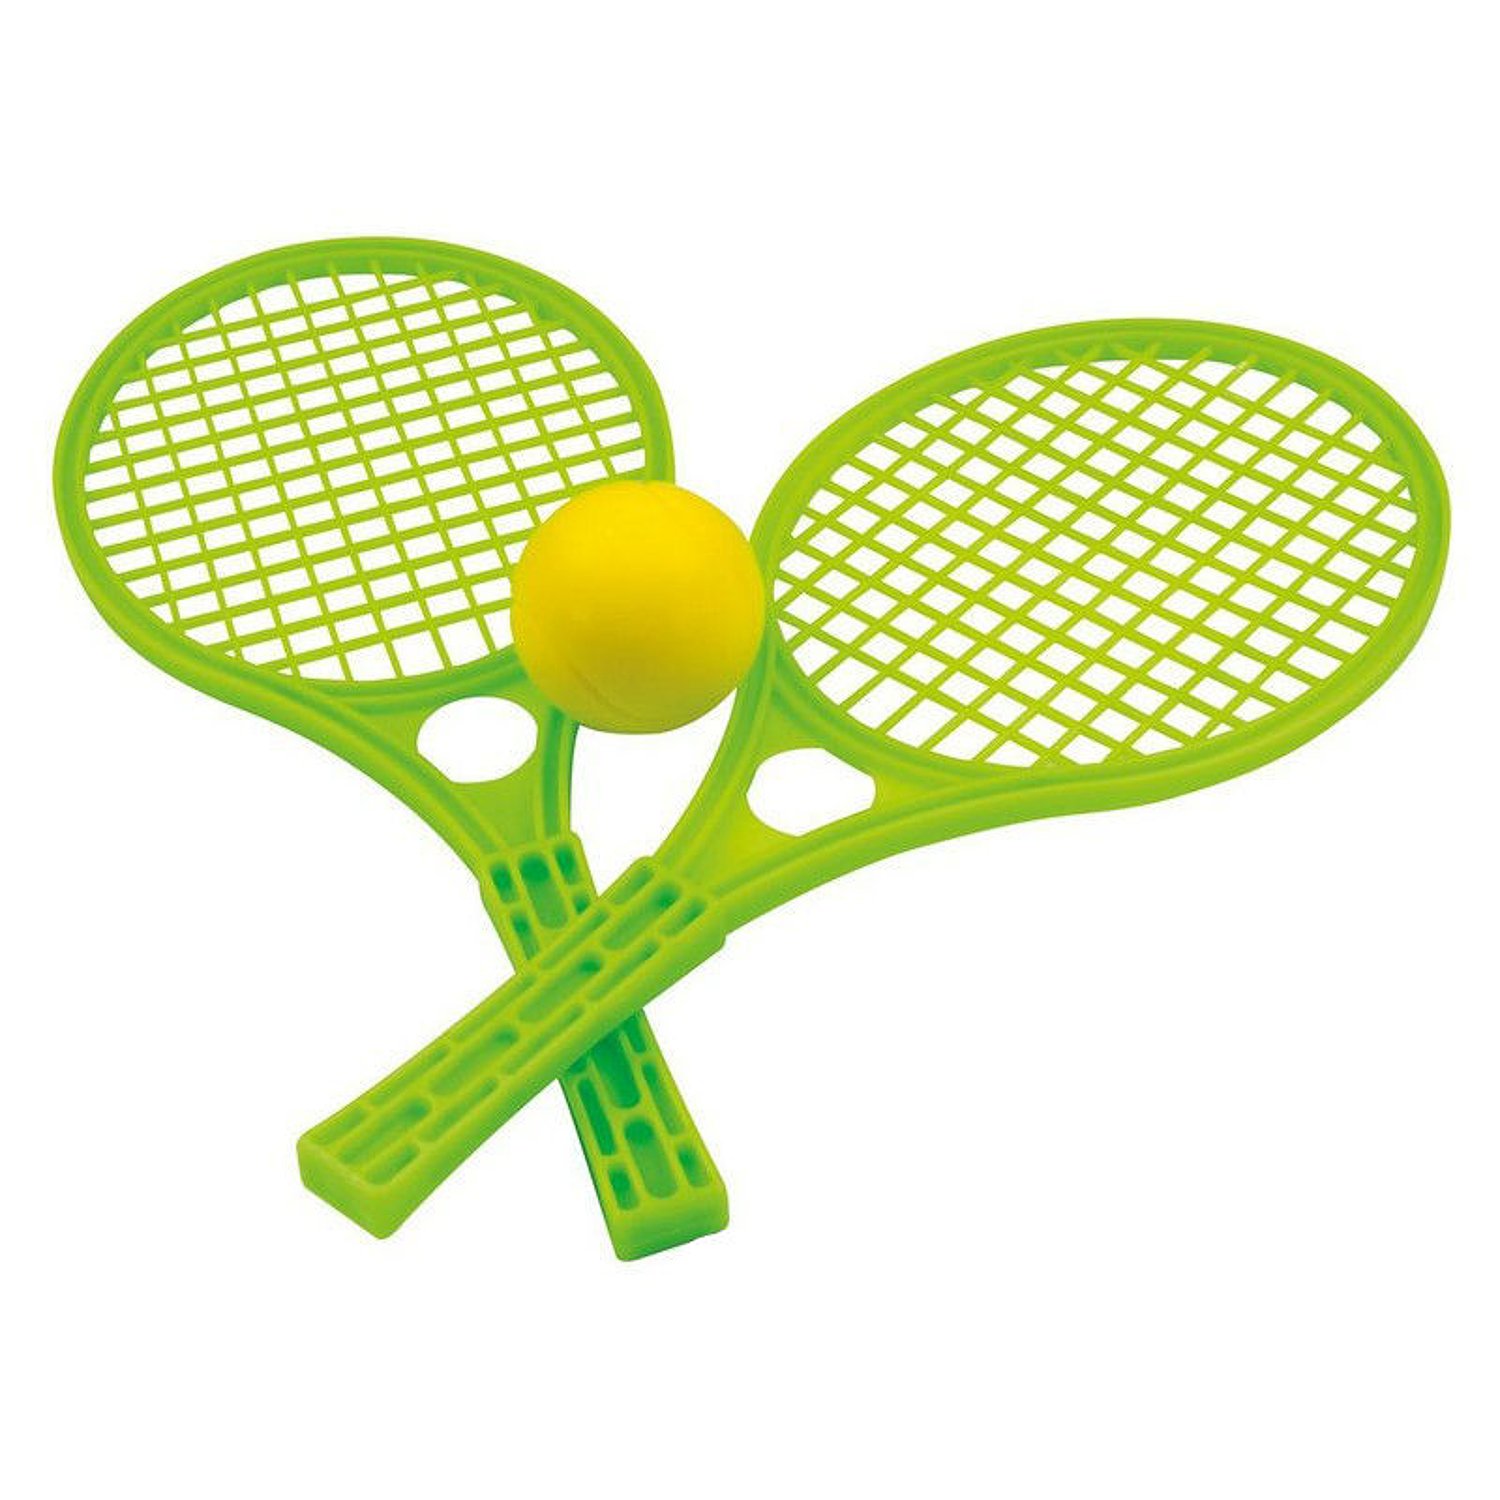 Комплект для игры в теннис. Набор для тенниса 15-5055-1. Теннисная и бадминтонная ракетка. Теннисные ракетки и мячик aj1607rk. Теннис пластиковые ракетки 68602.